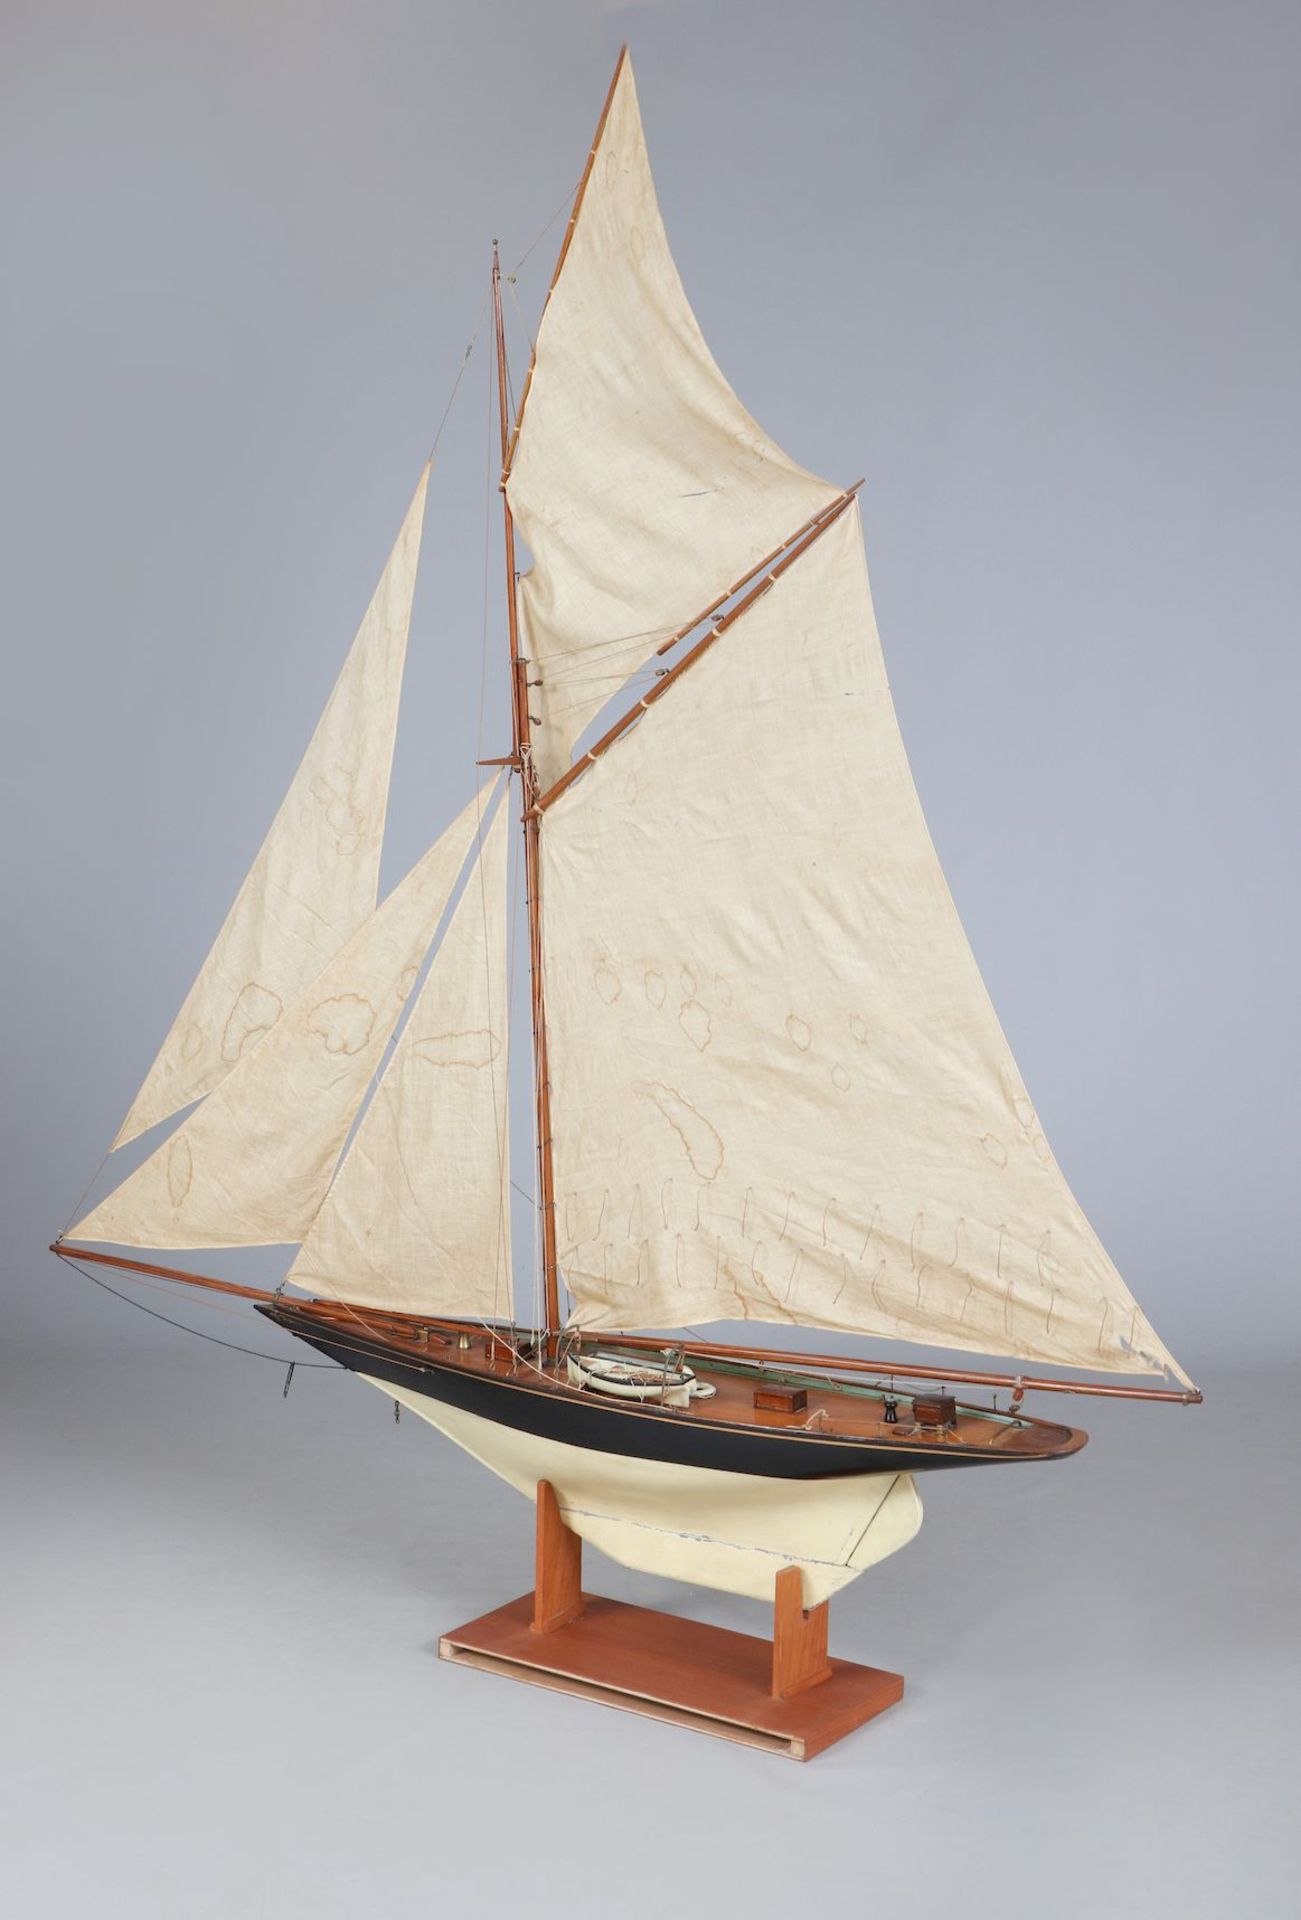 Modell eines frühen Segelschiffes ¨Yacht¨